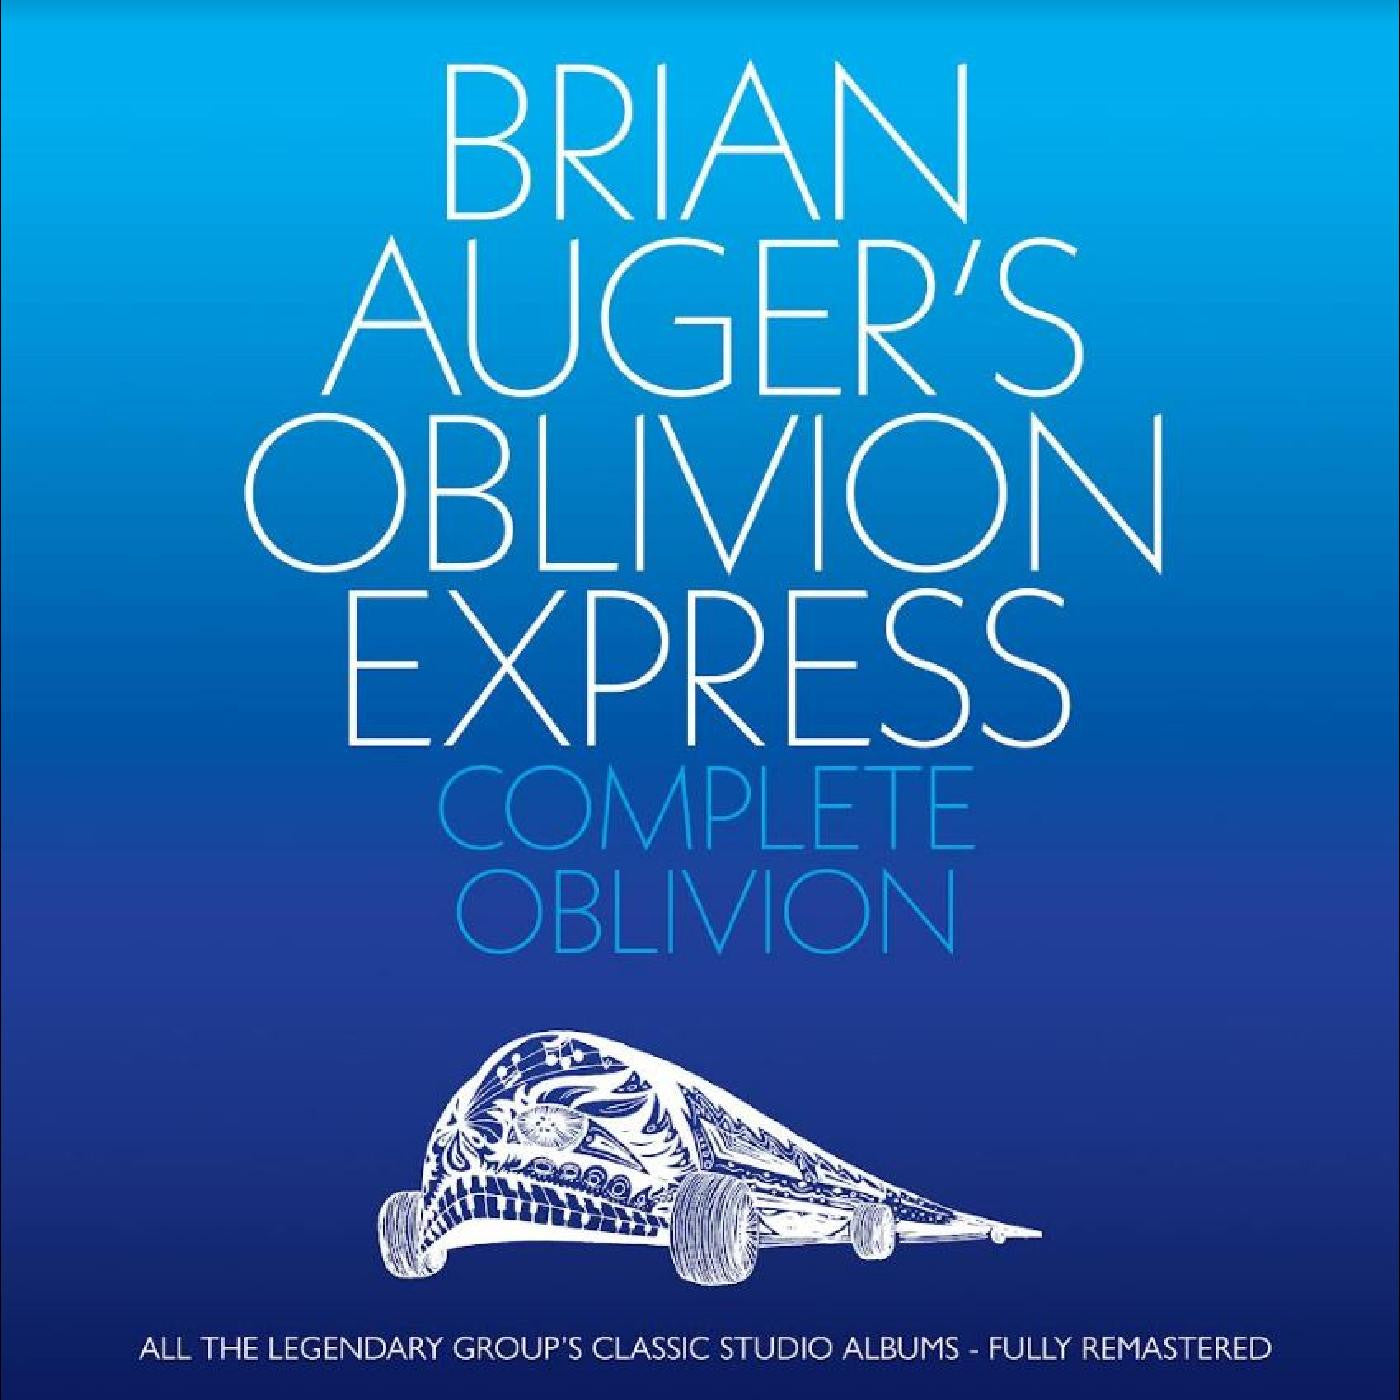 Brian Auger's Oblivion Express - Complete Oblivion [6-lp Box Set]